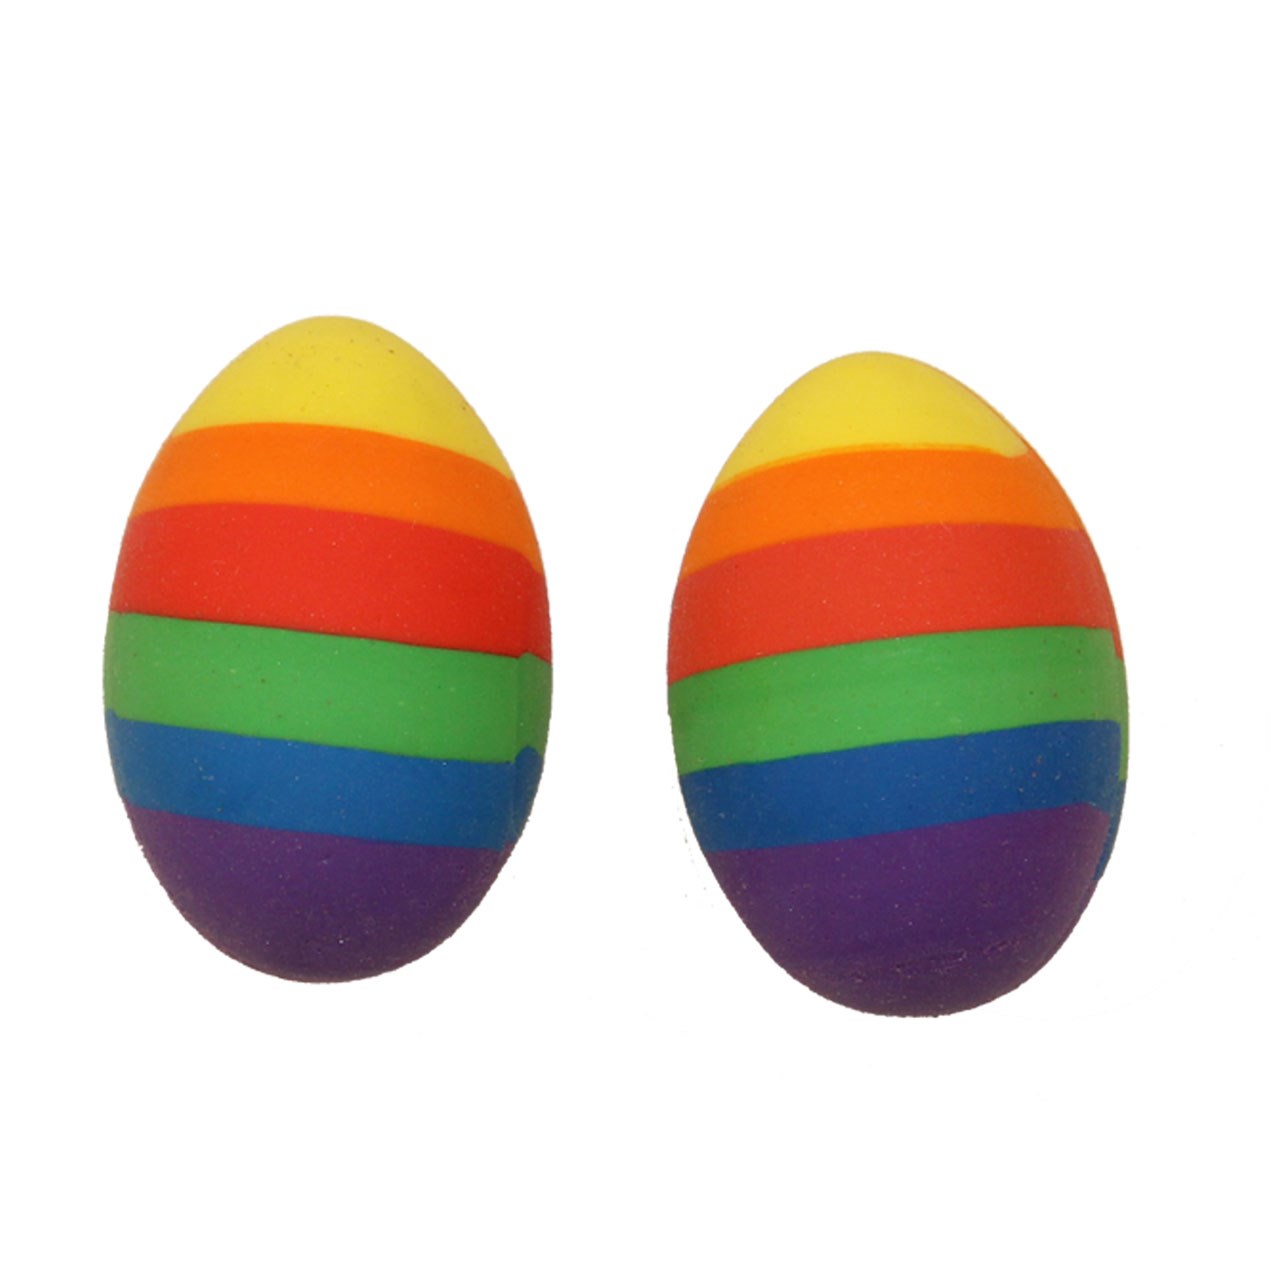 پاک کن ارت کیوب مدل تخم مرغ رنگی مجموعه دو عددی